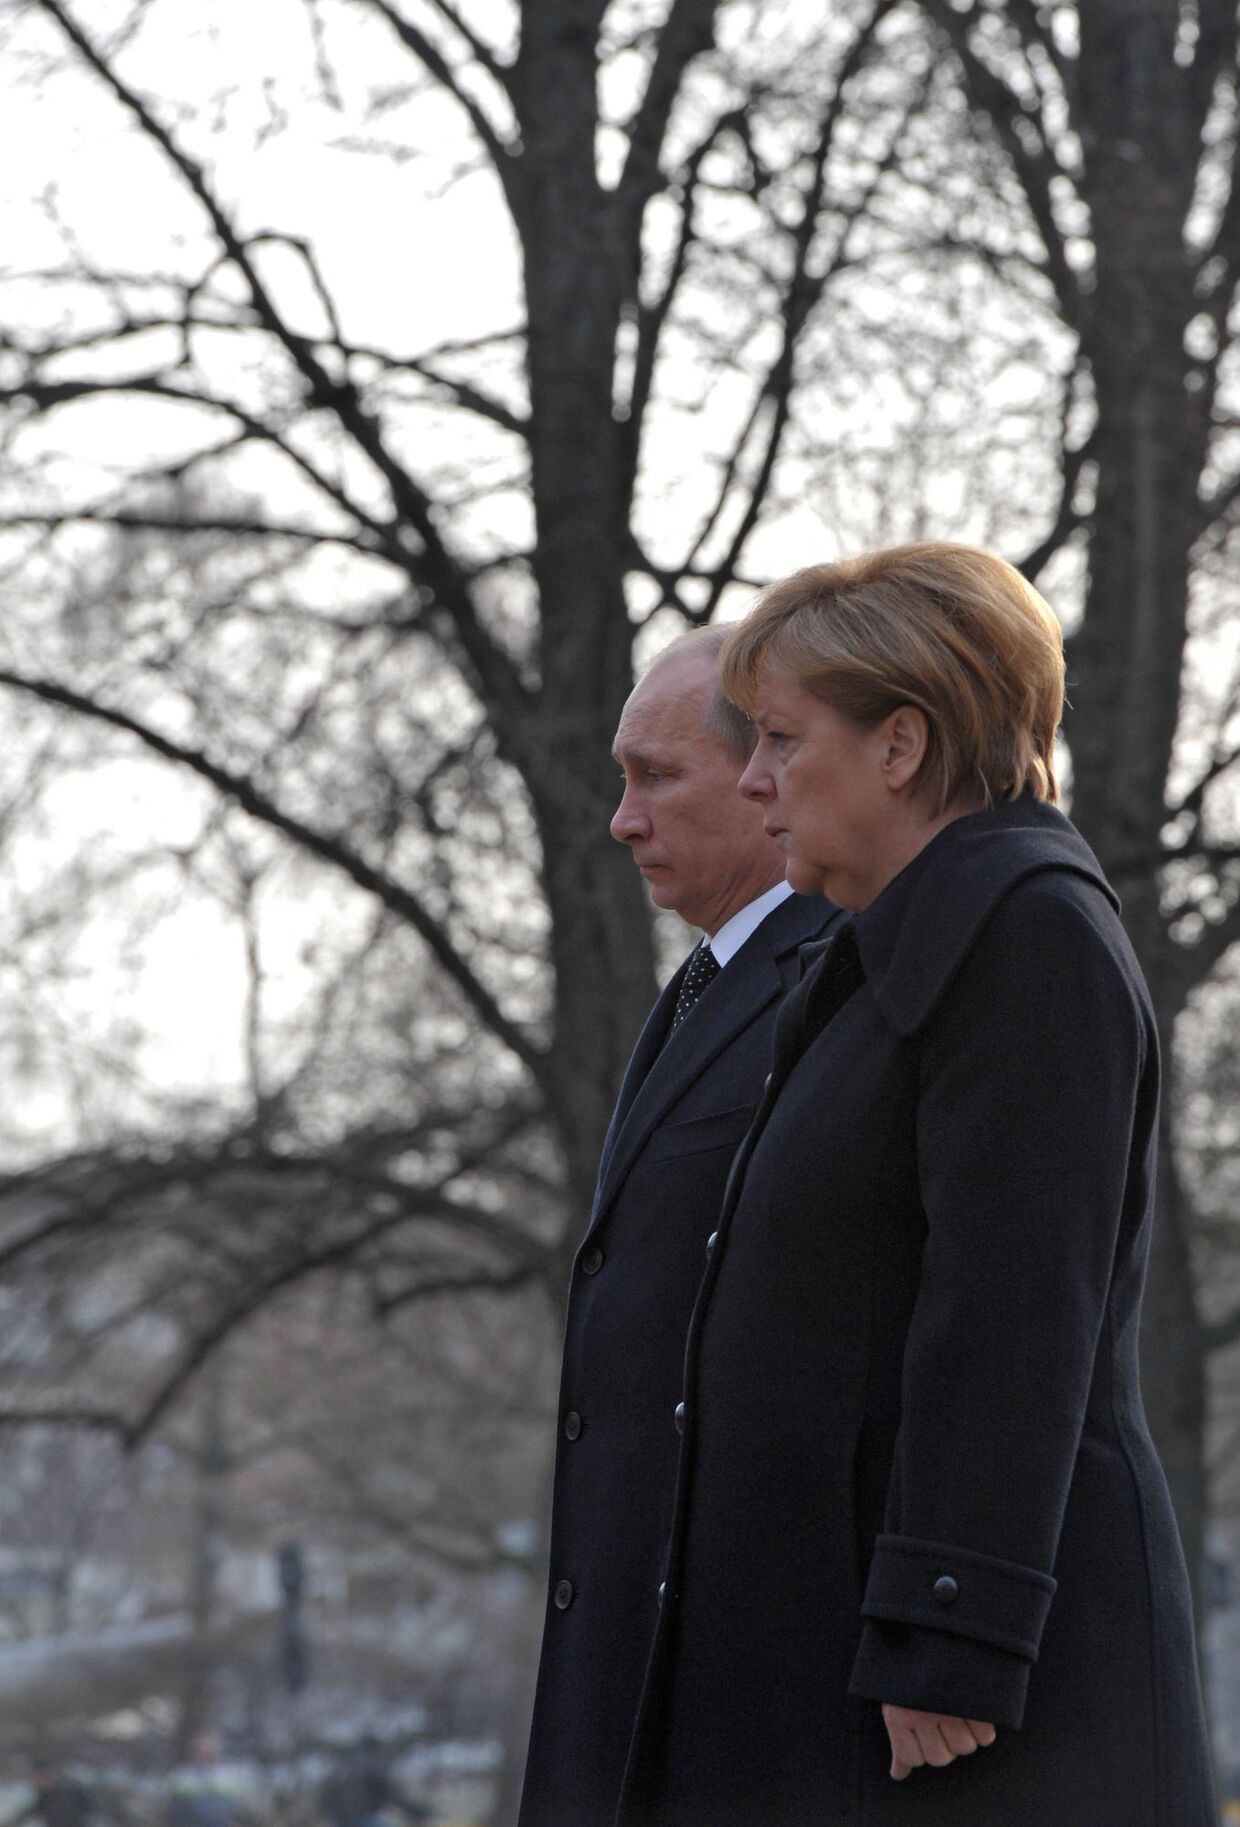 Владимир Путин и Ангела Меркель в Ганновере на церемонии возложения венка к памятнику гражданам СССР и других стран - жертвам нацистского режима 